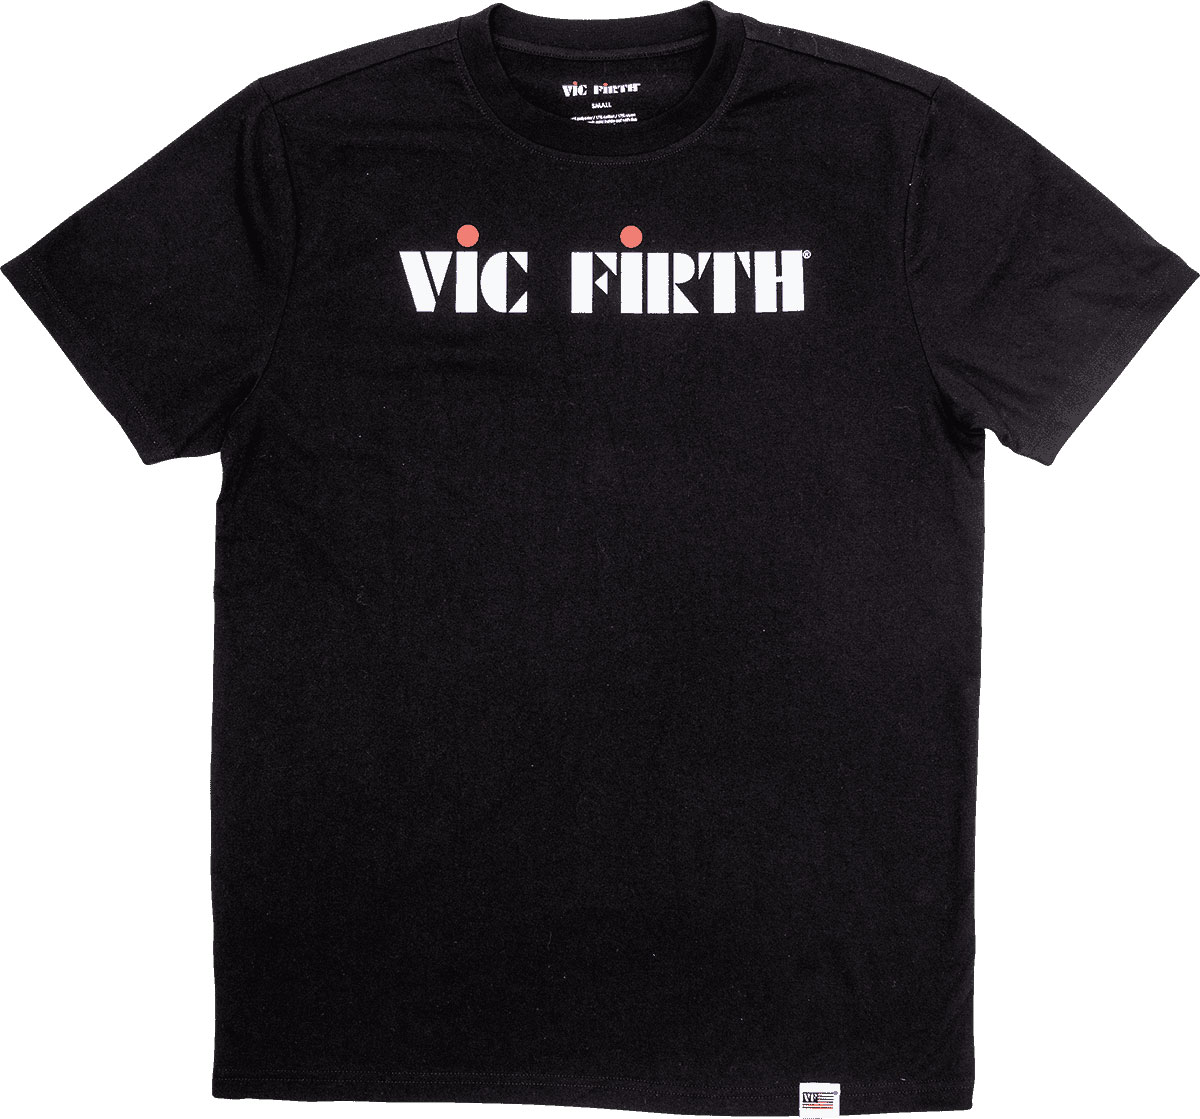 VIC FIRTH BLACK LOGO TEE XL